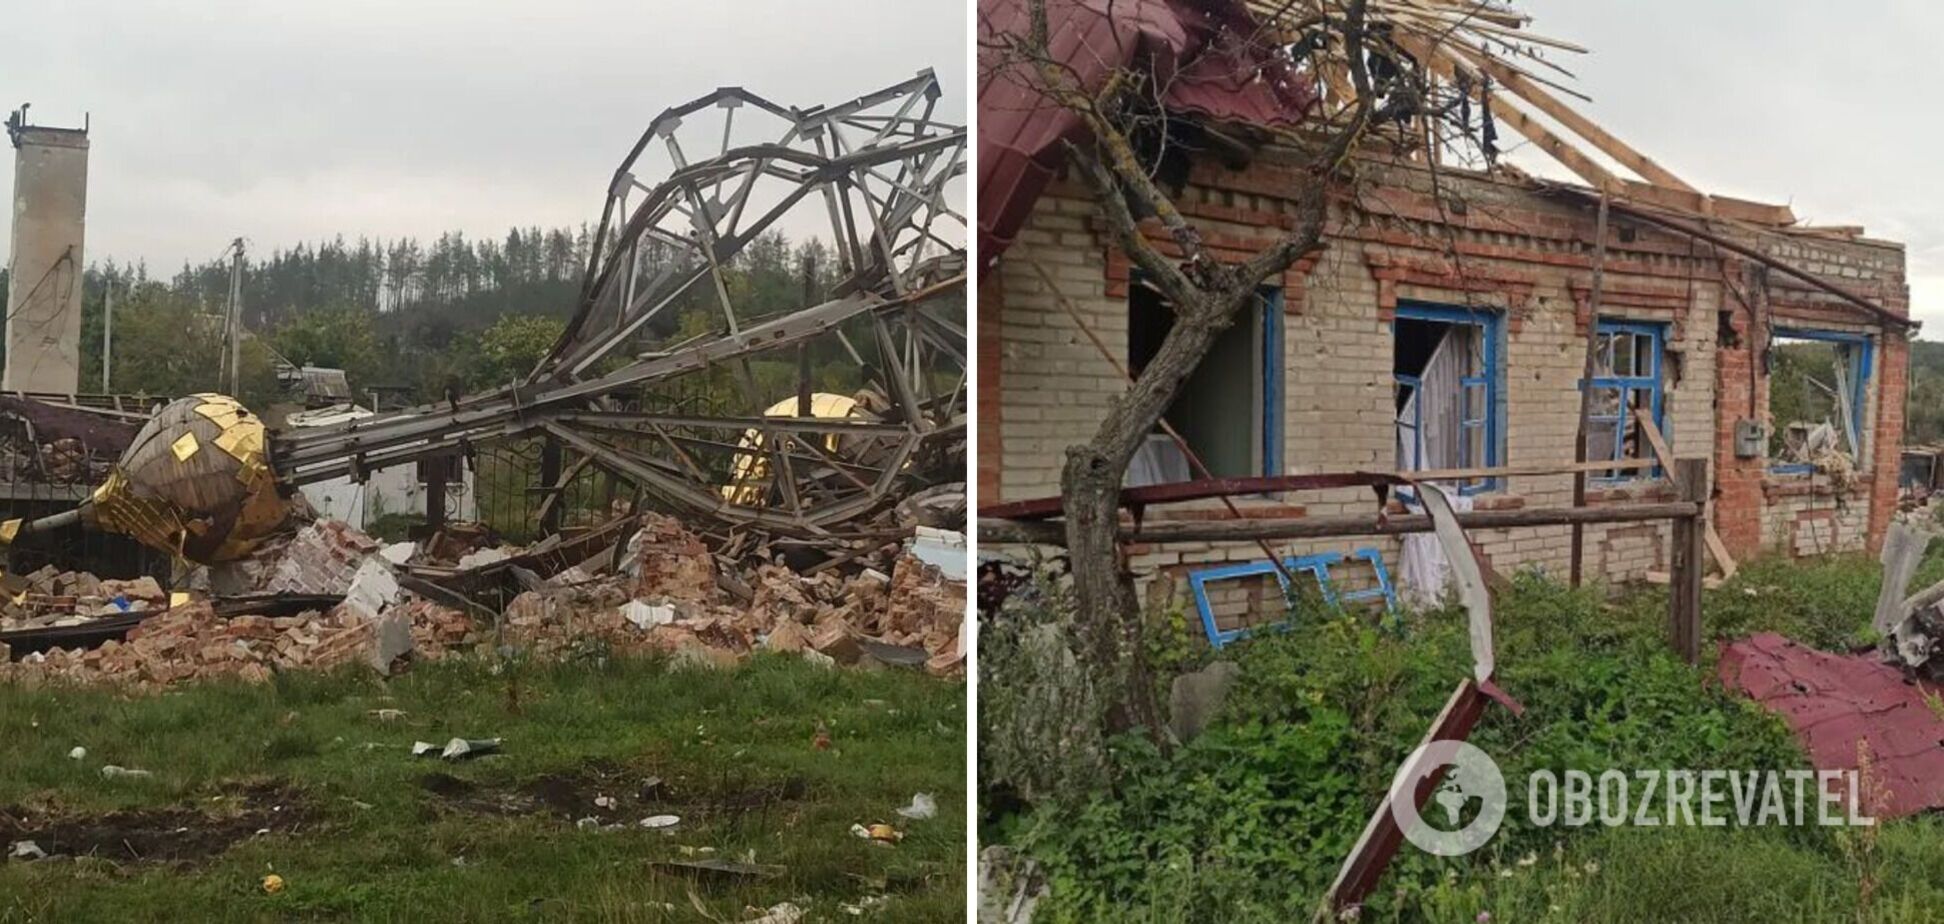 'Тела убитых лежали на дороге': стало известно о зверствах оккупантов в Богородичном Донецкой области. Видео